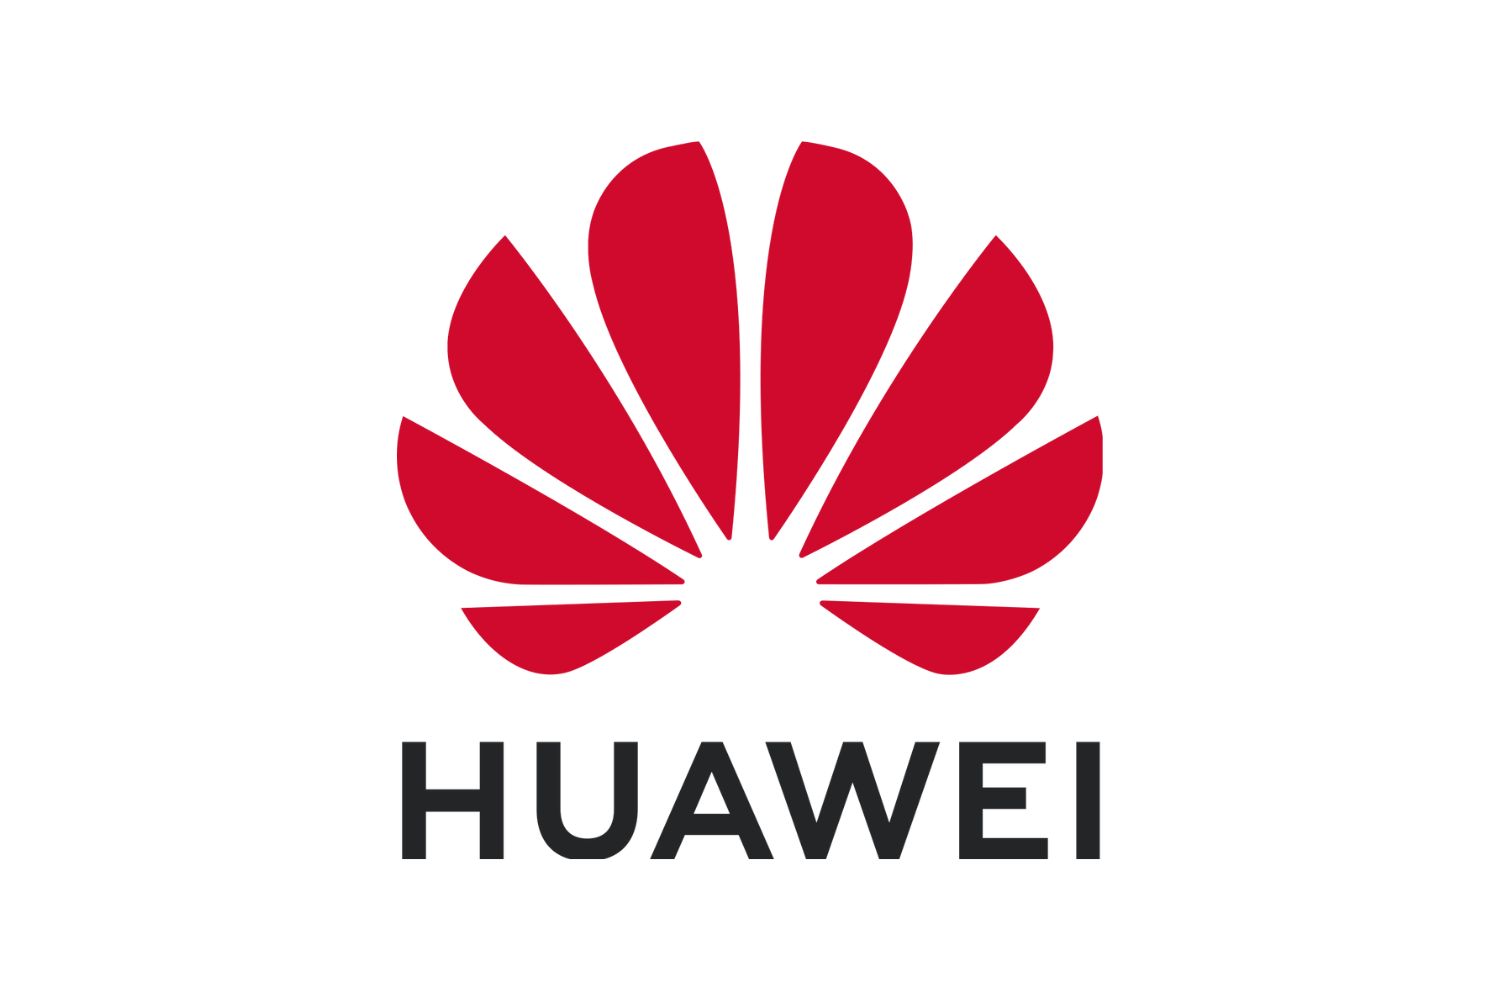 Huawei - Outstanding Contribution Partner Award